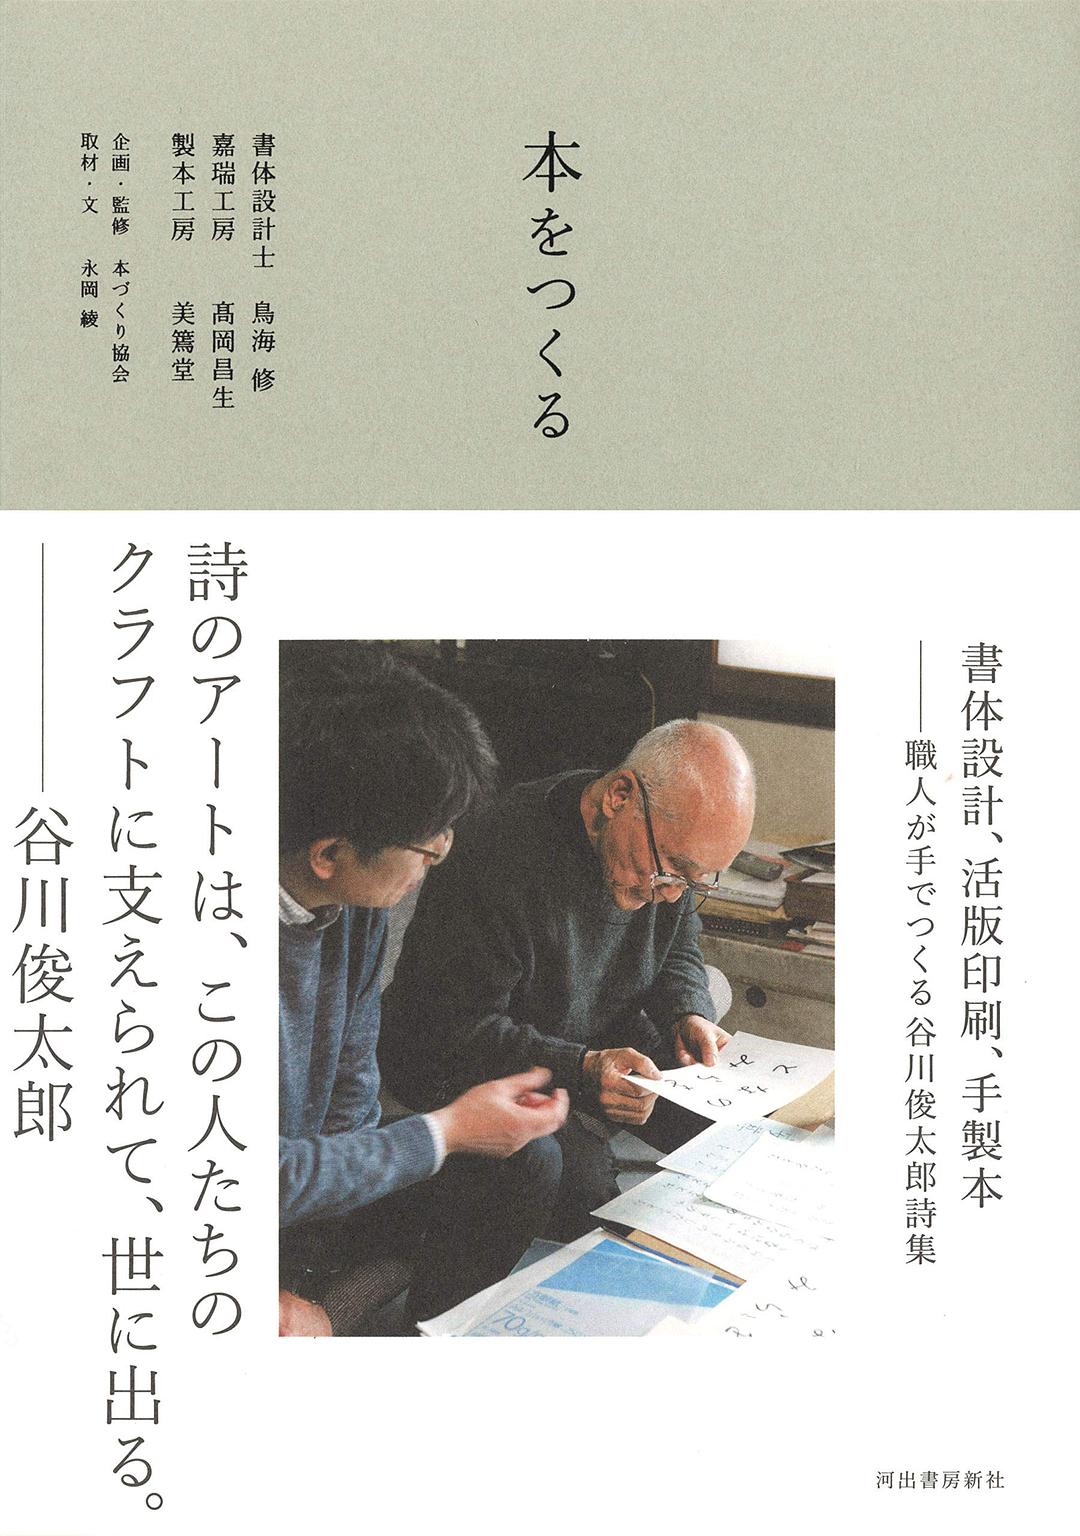 本をつくる 書体設計、活版印刷、手製本 職人が手でつくる谷川俊太郎詩集